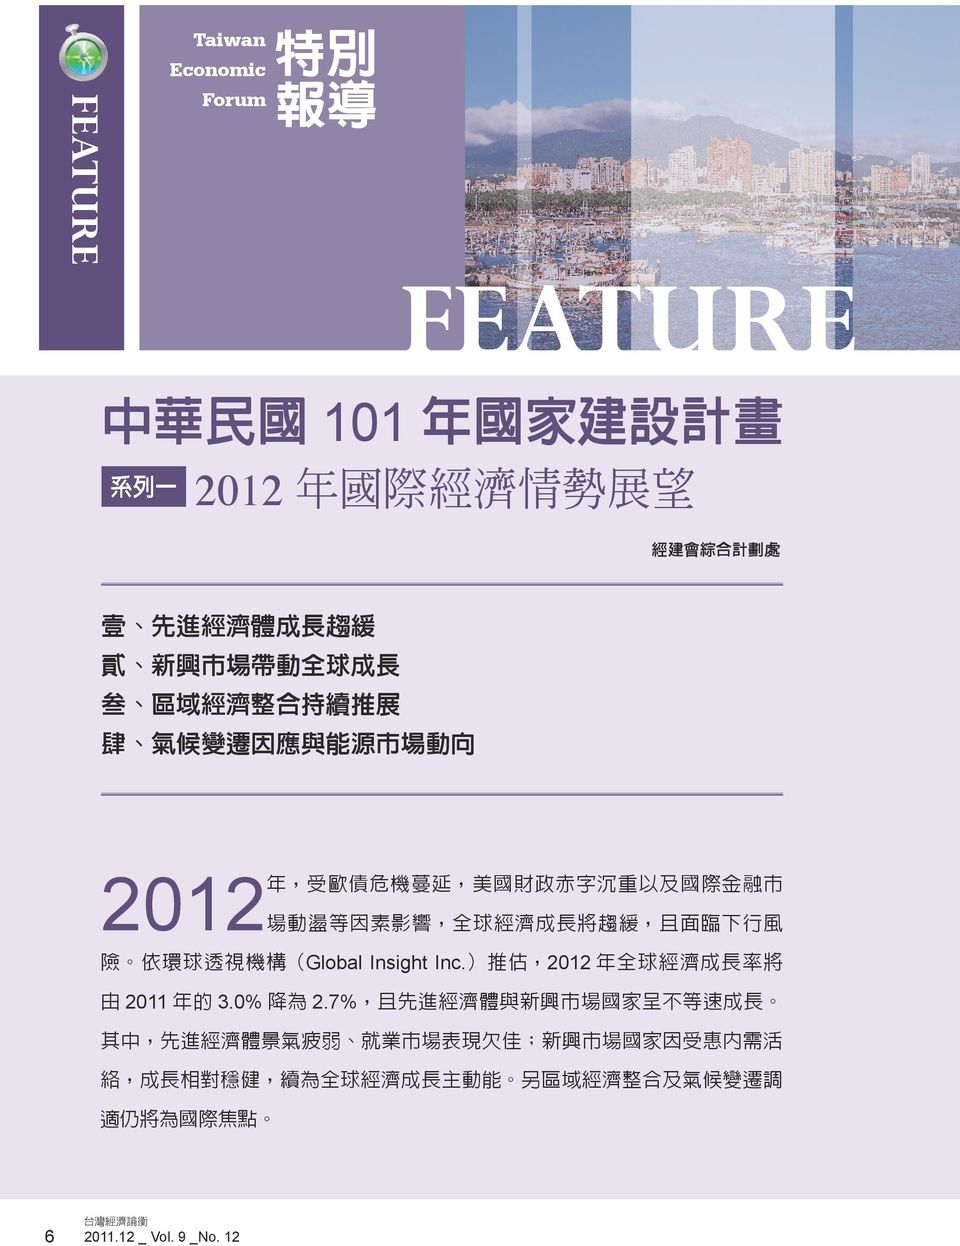 險 依環球透視機構 Global Insight Inc. 推估 2012 年全球濟成長率將 由 2011 年的 3.0% 降為 2.